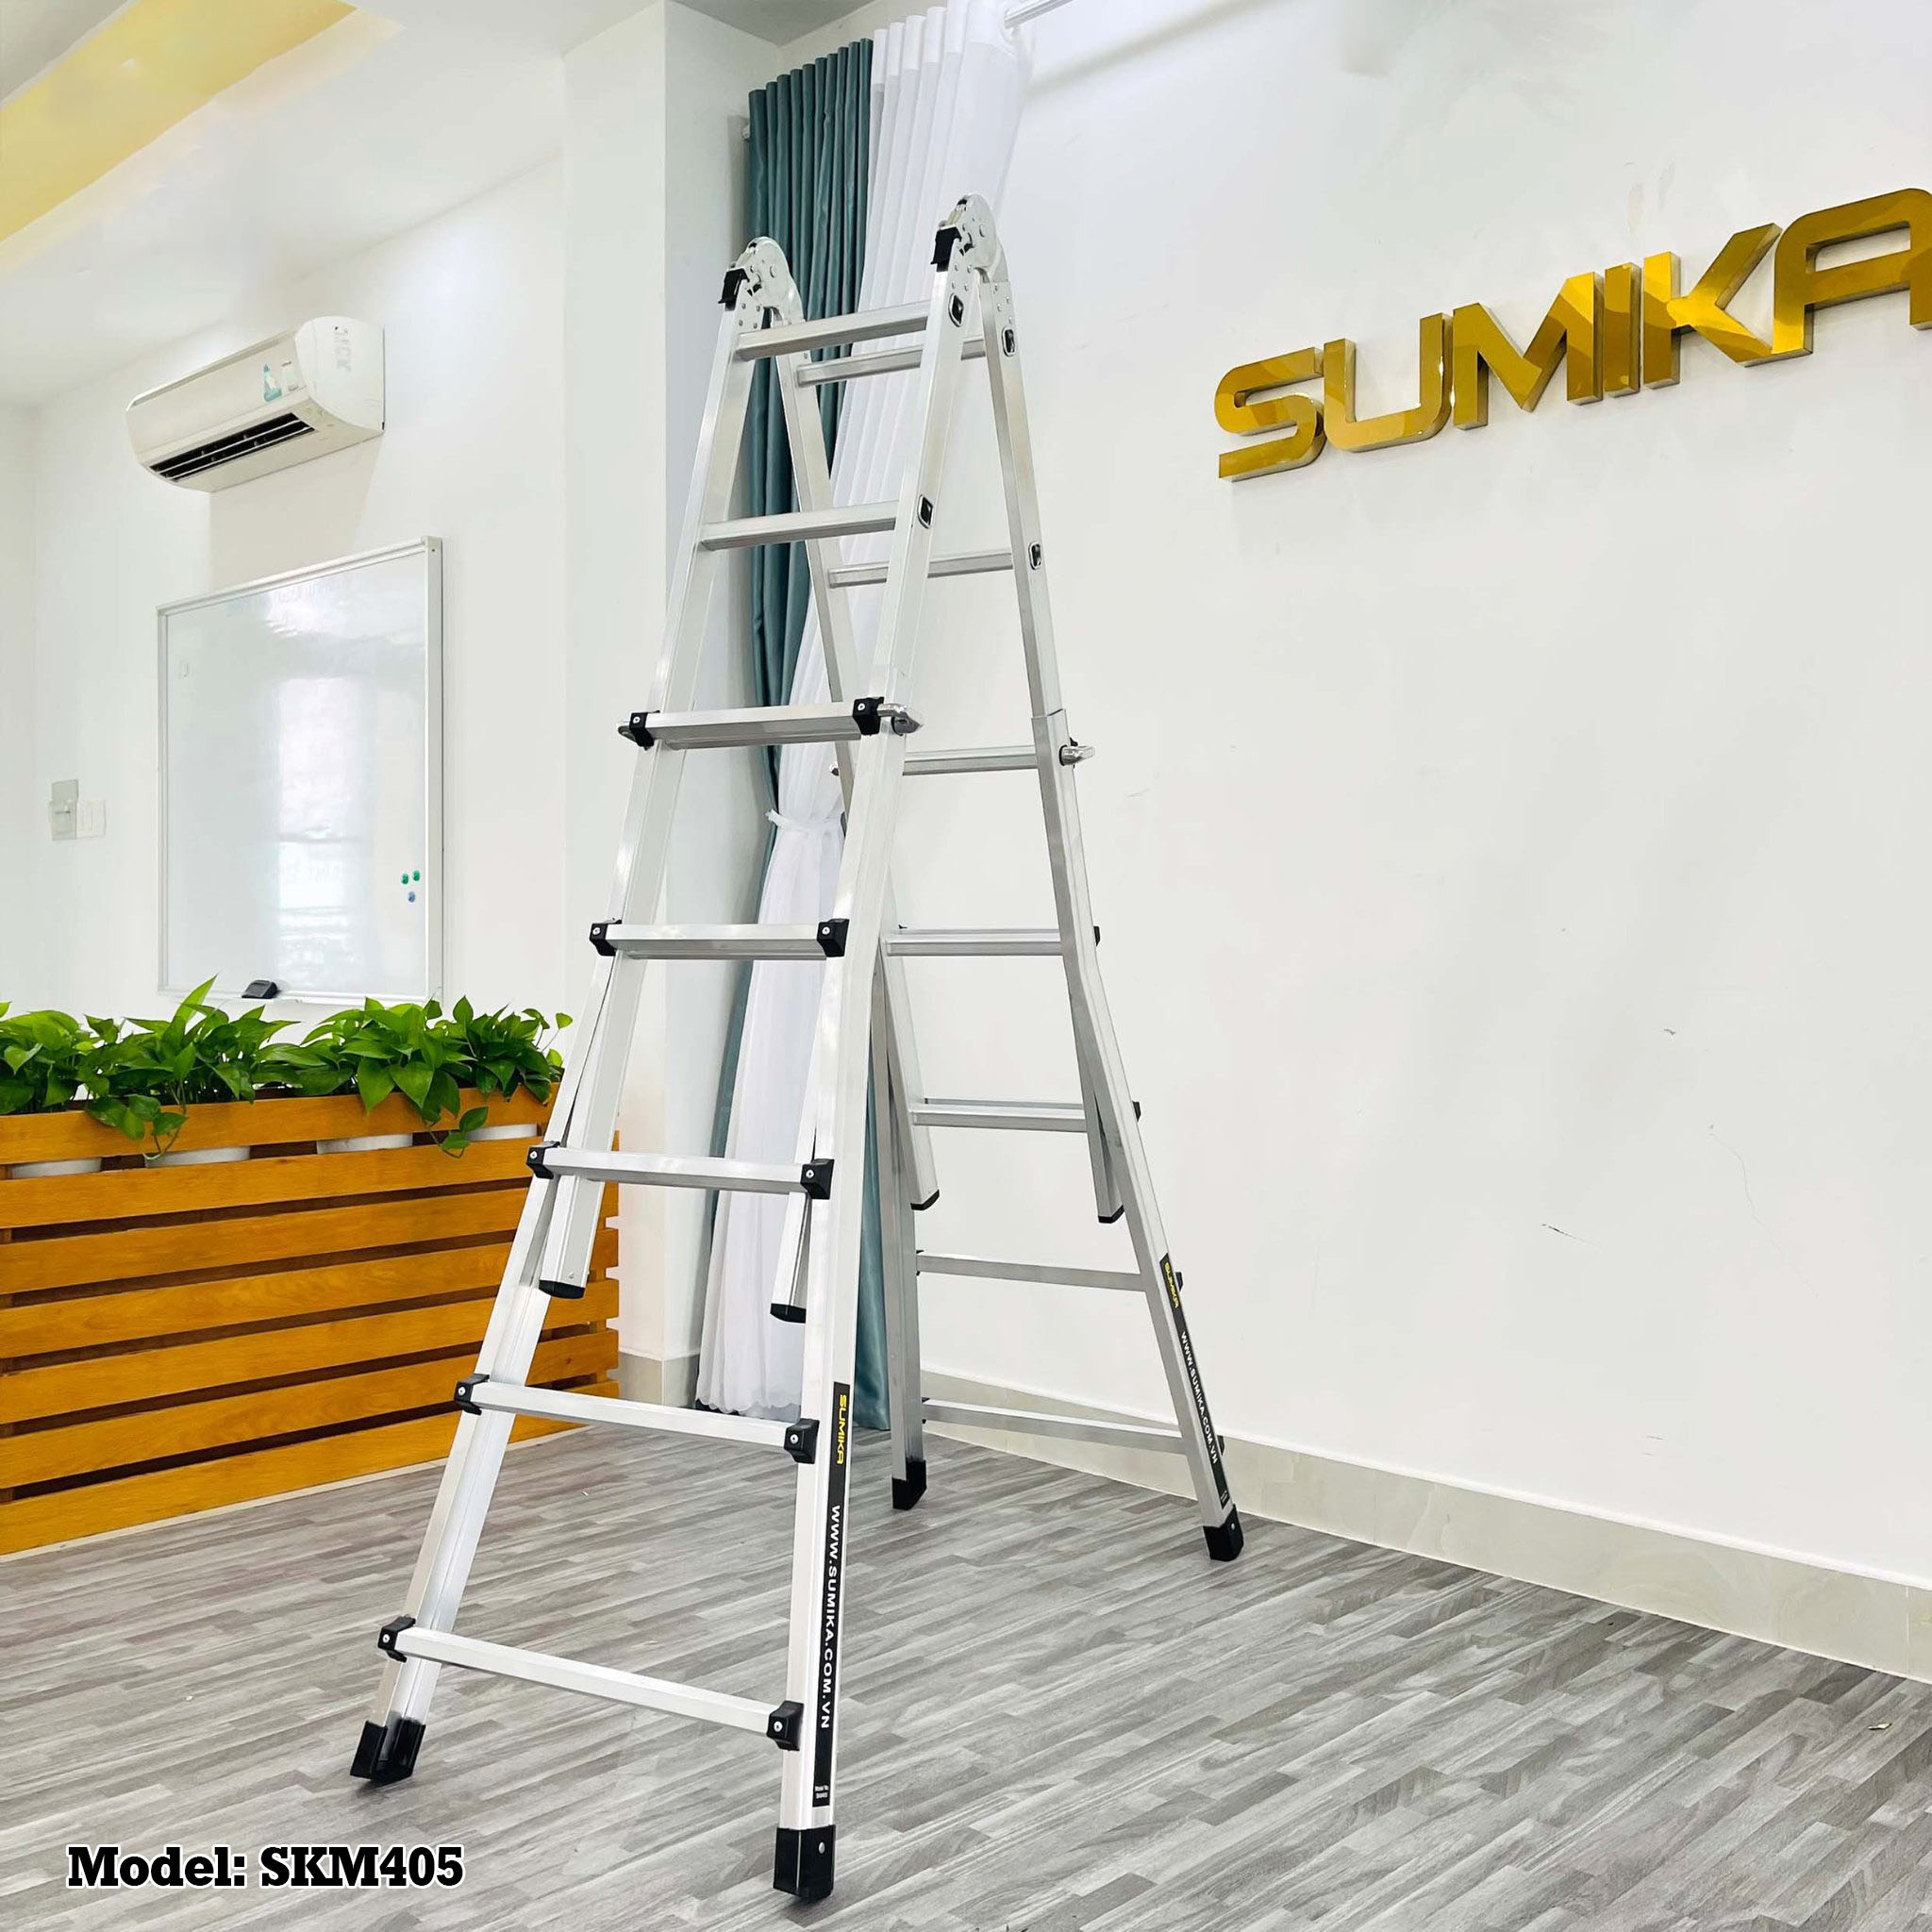 Thang nhôm trượt đa năng SUMIKA SKM405 - Chữ A cao nhất 2.5m, chữ I cao nhất 5.1m, tải trọng 300kg